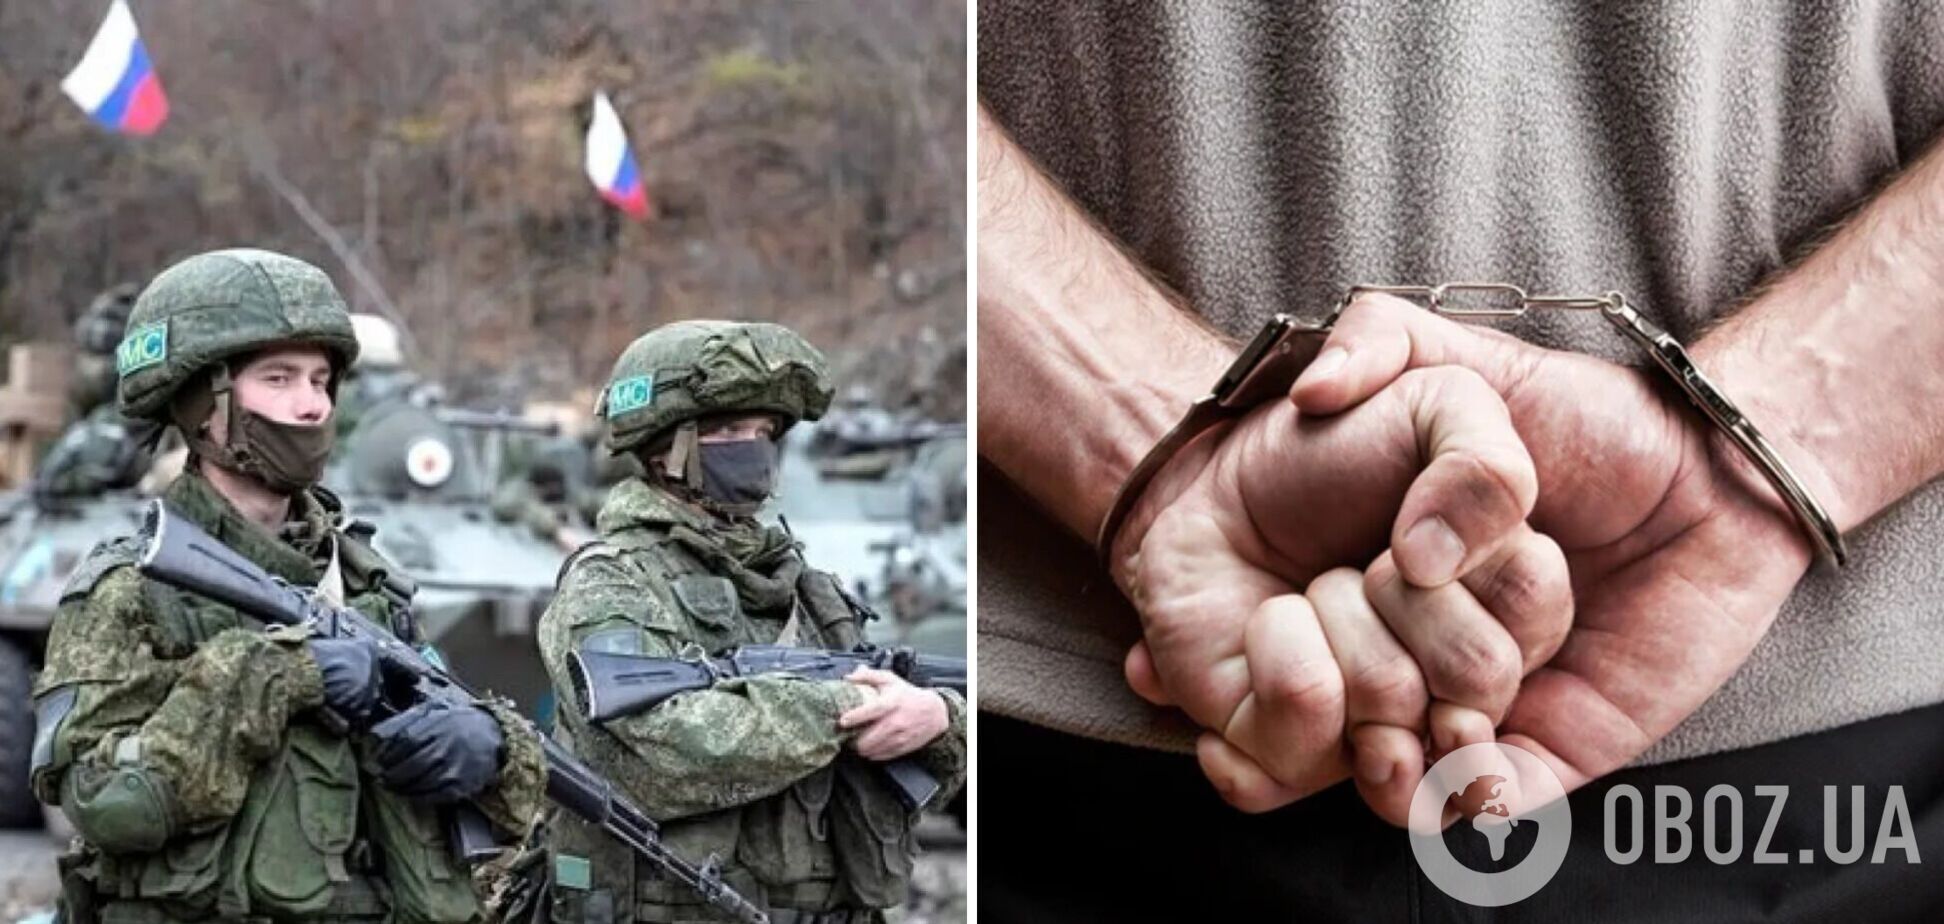 Пленный российский оккупант пожаловался, что за отказ воевать против Украины солдатам давали срок. Видео